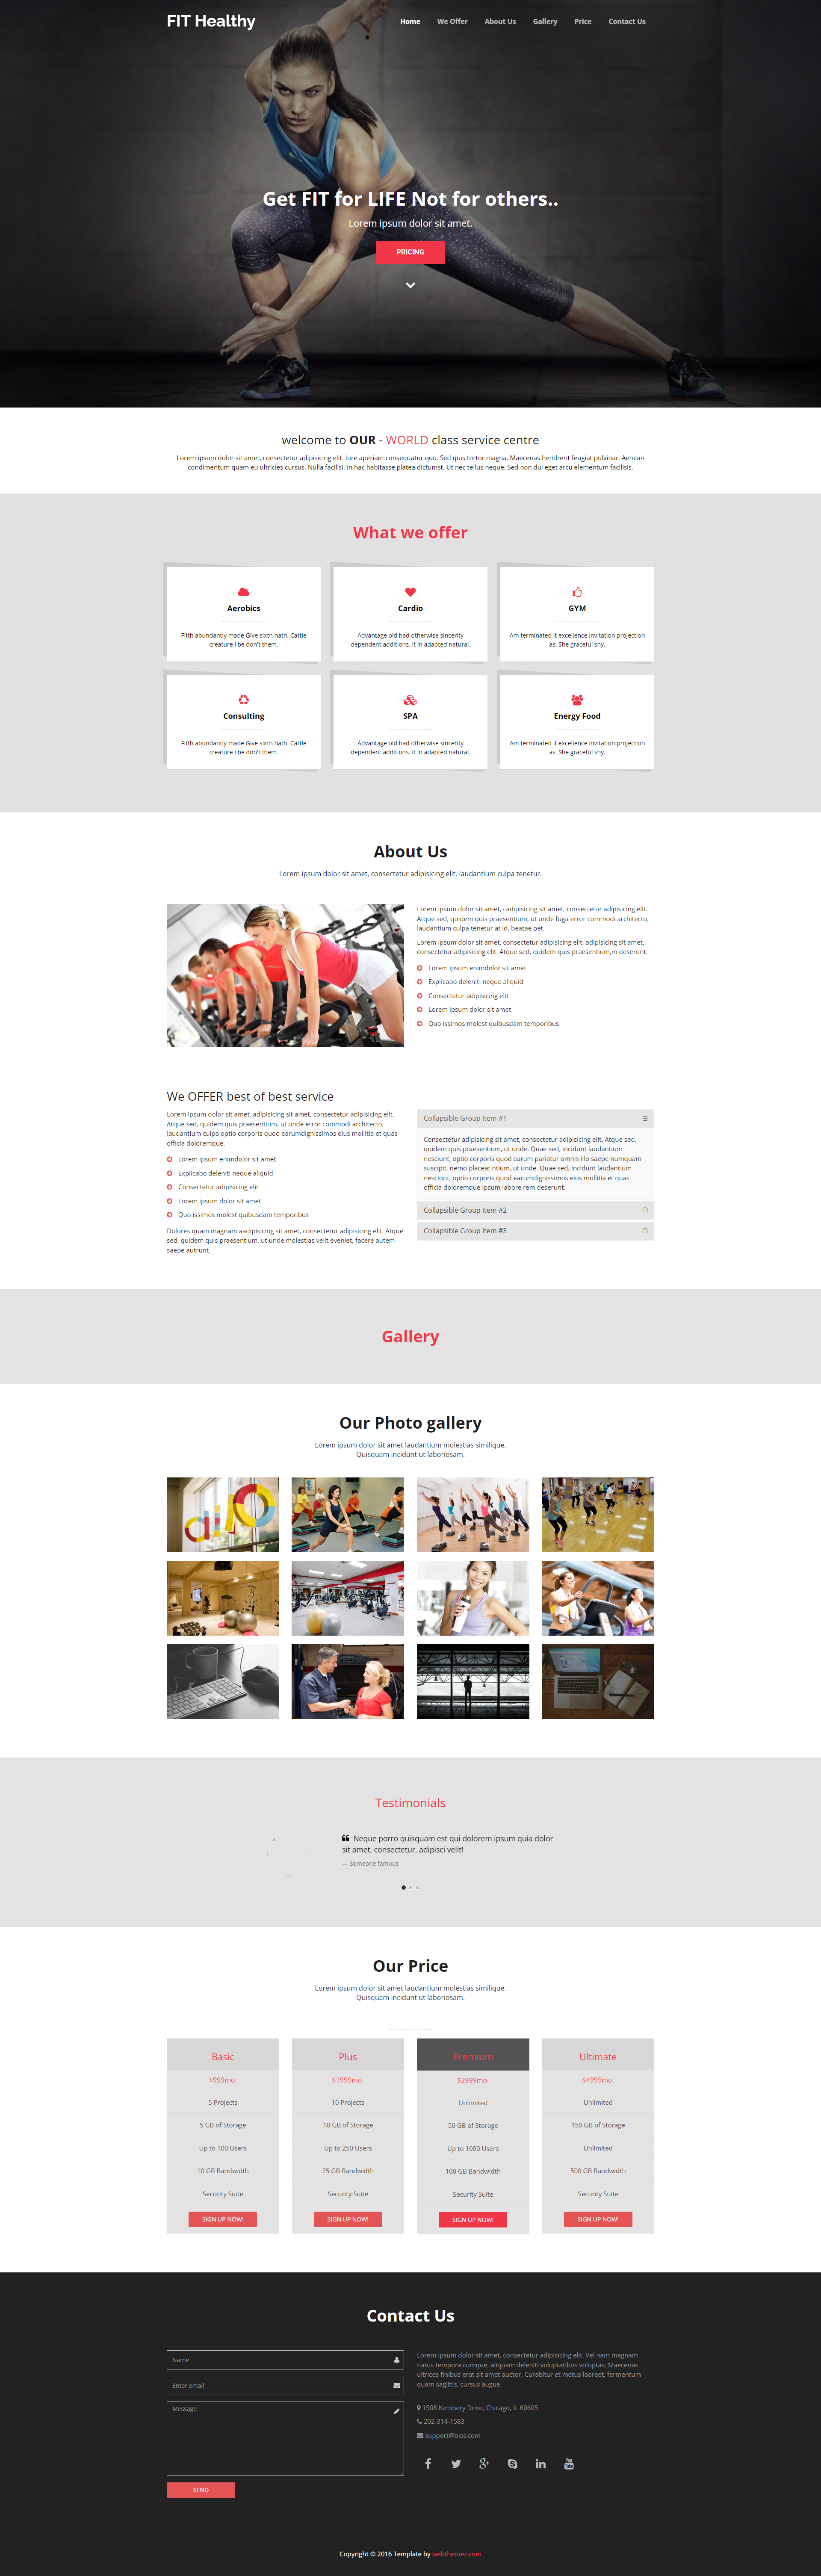 Chia sẻ giao diện website dịch vụ sức khỏe, thể dục, gym thiết kế đẹp